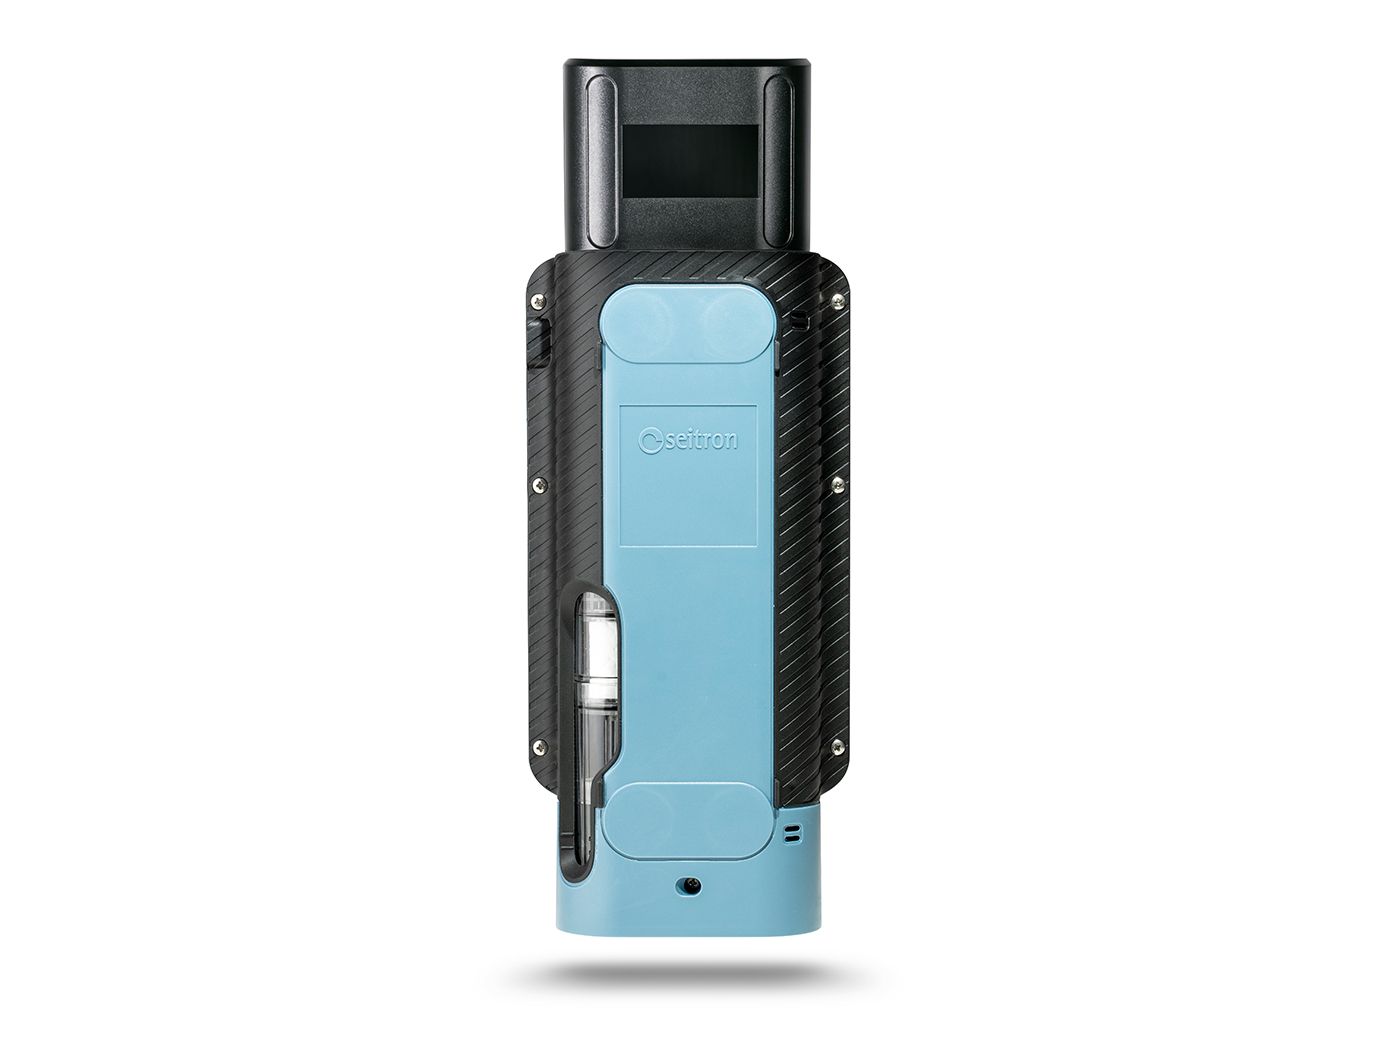 Seitron Novo 3-P analizzatore portatile di combustione - fumi 02, CO, NO con stampante integrata